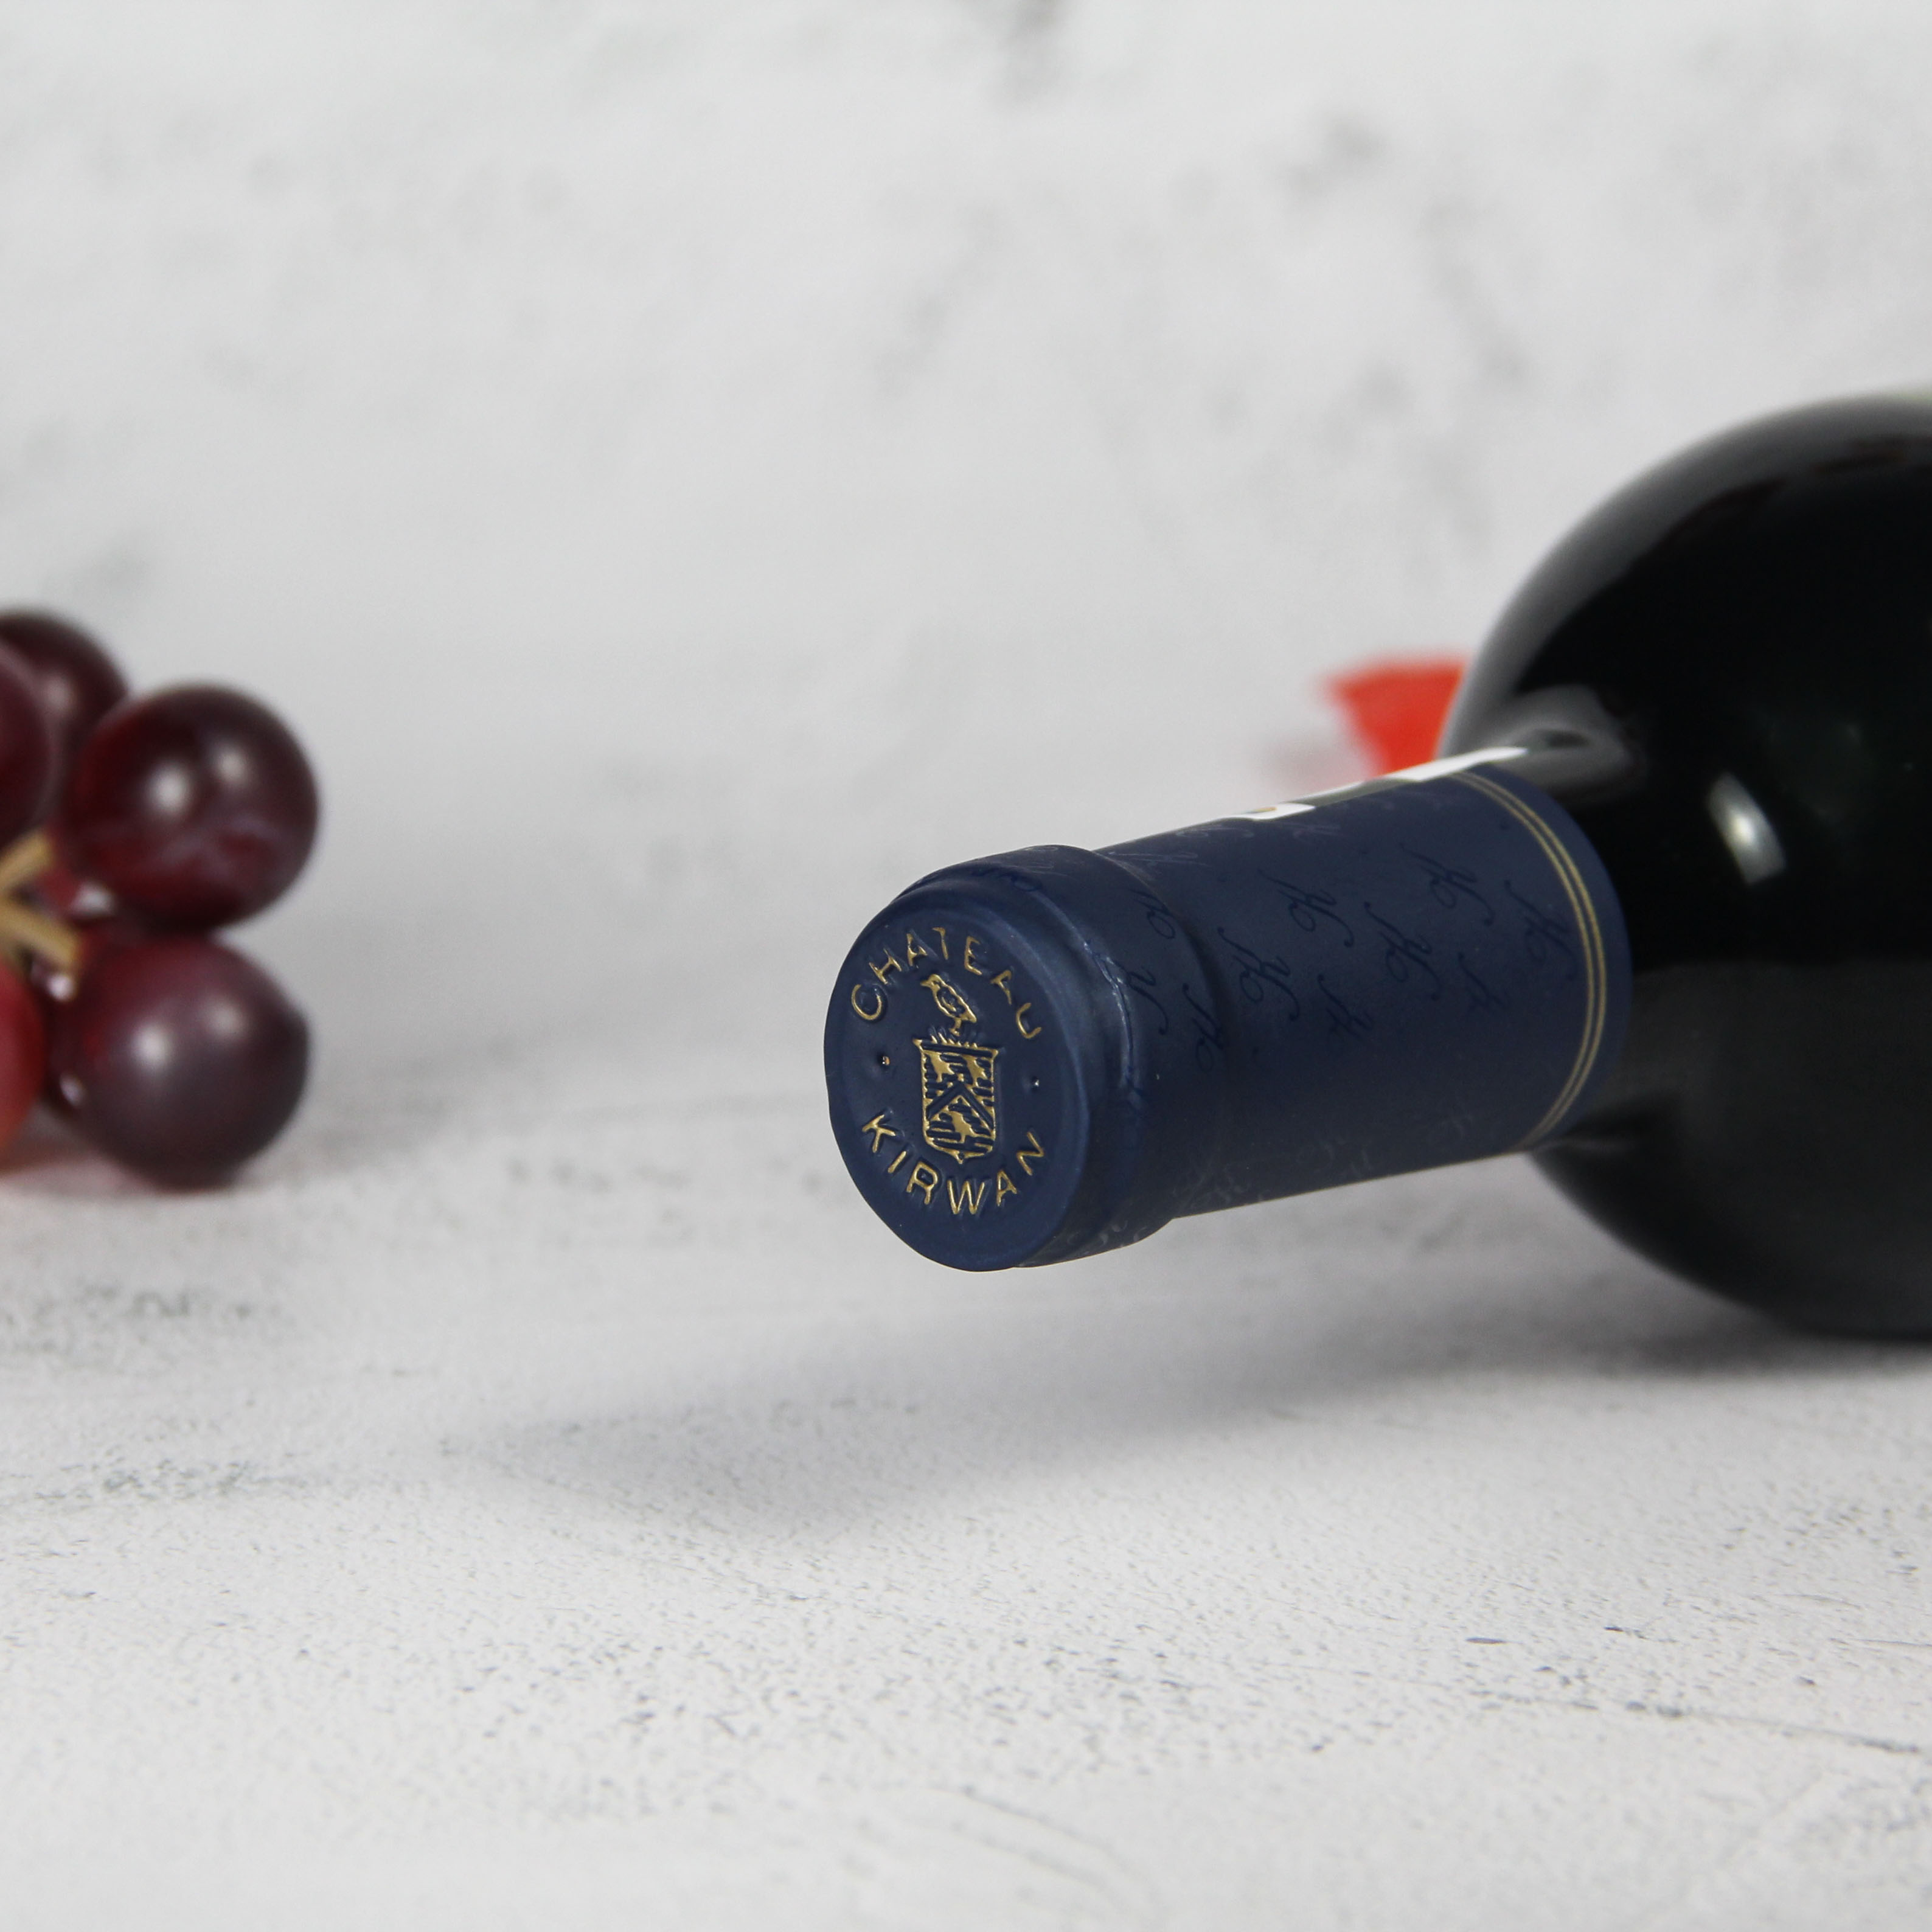 法国波尔多玛歌麒麟庄园干红葡萄酒红酒2015